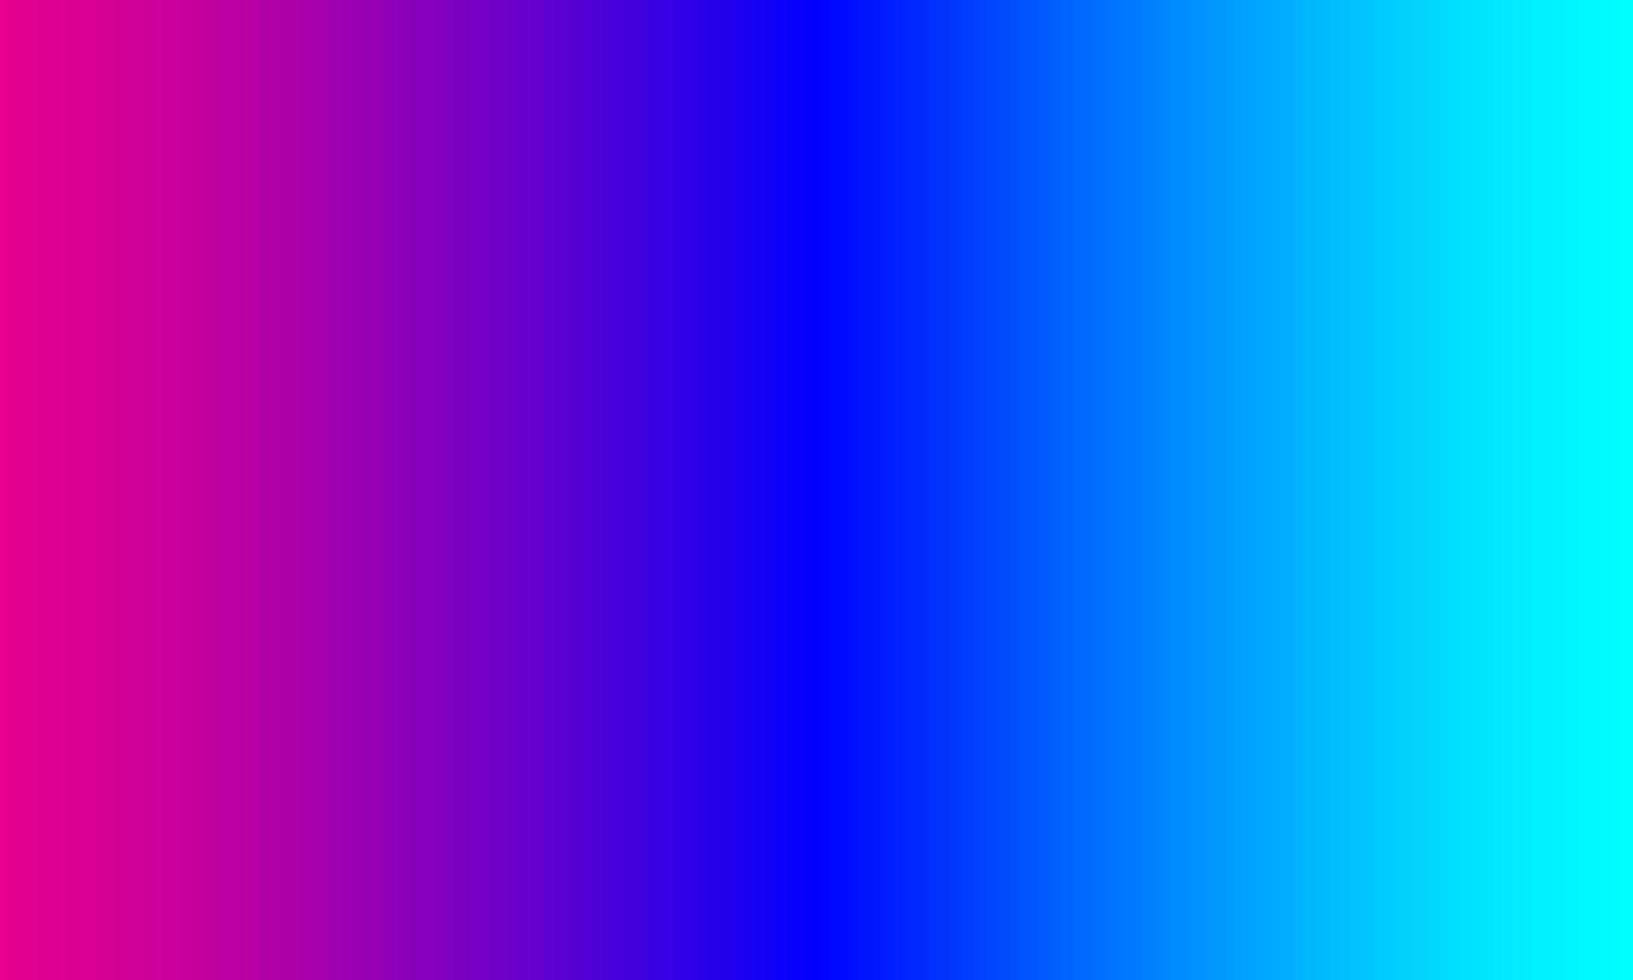 rosa, blauer und pastellblauer Farbverlauf. abstrakt, leer, sauber, Farben, fröhlicher und einfacher Stil. geeignet für hintergrund, banner, flyer, broschüre, tapeten oder dekor vektor